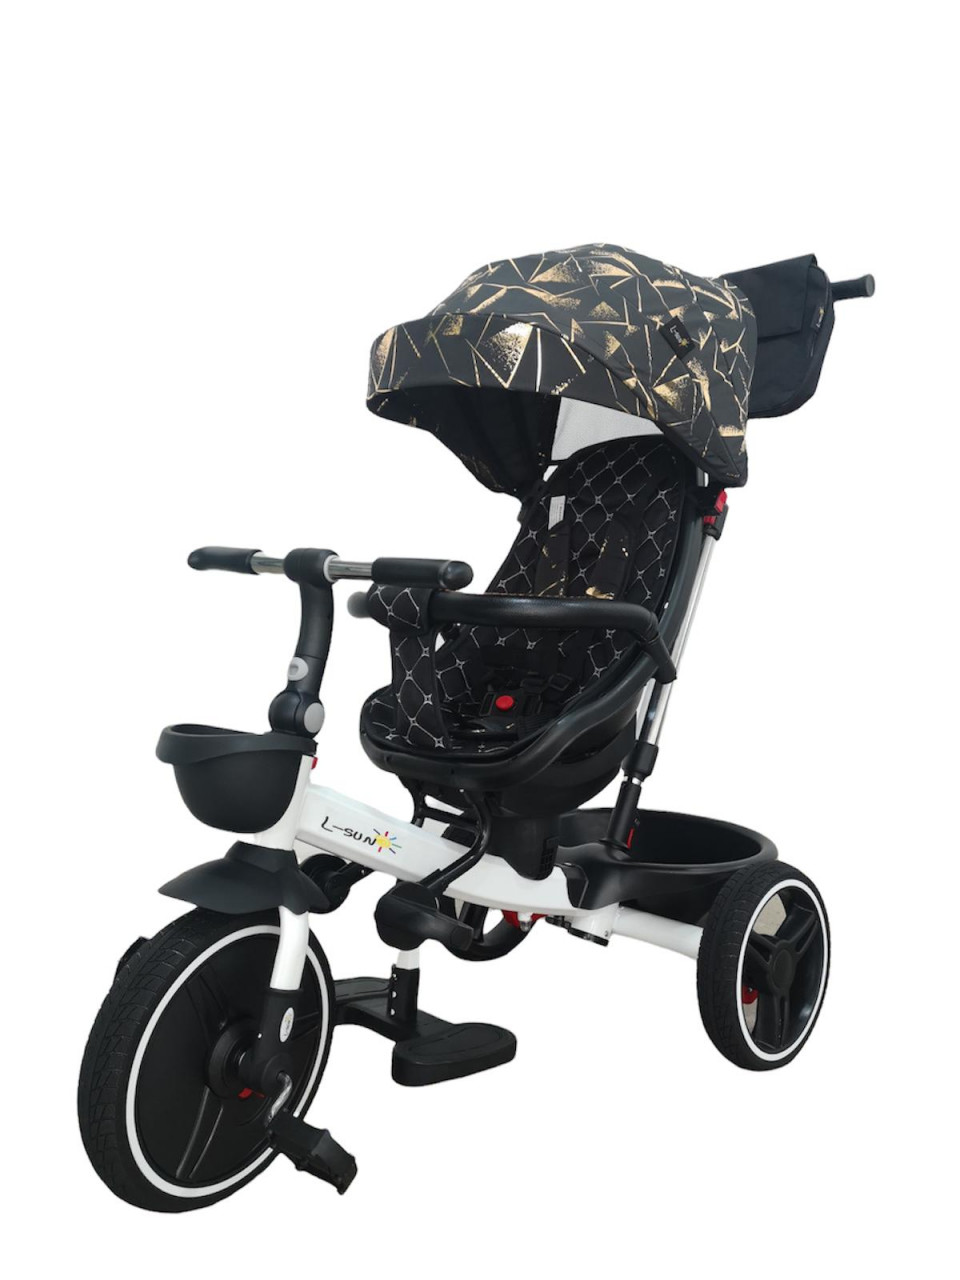 scaun auto bebe cu pozitie de somn Tricicleta pliabila cu scaun reversibil si pozitie de somn, Negru-Auriu, TMR-44-auriu